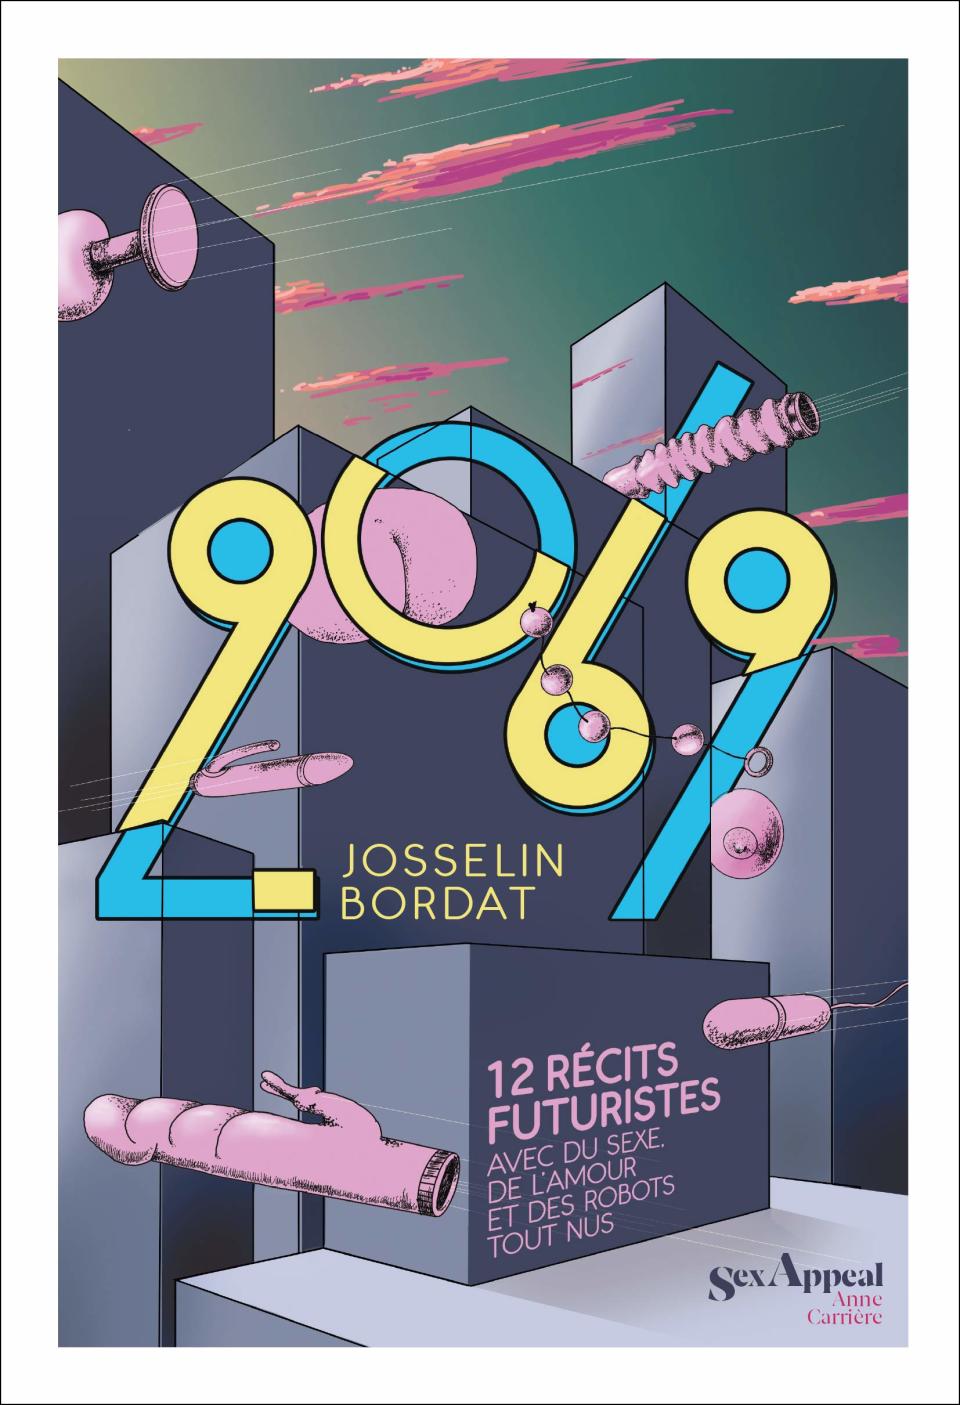 Romans érotiques : « 2069 », de Josselin Bordat